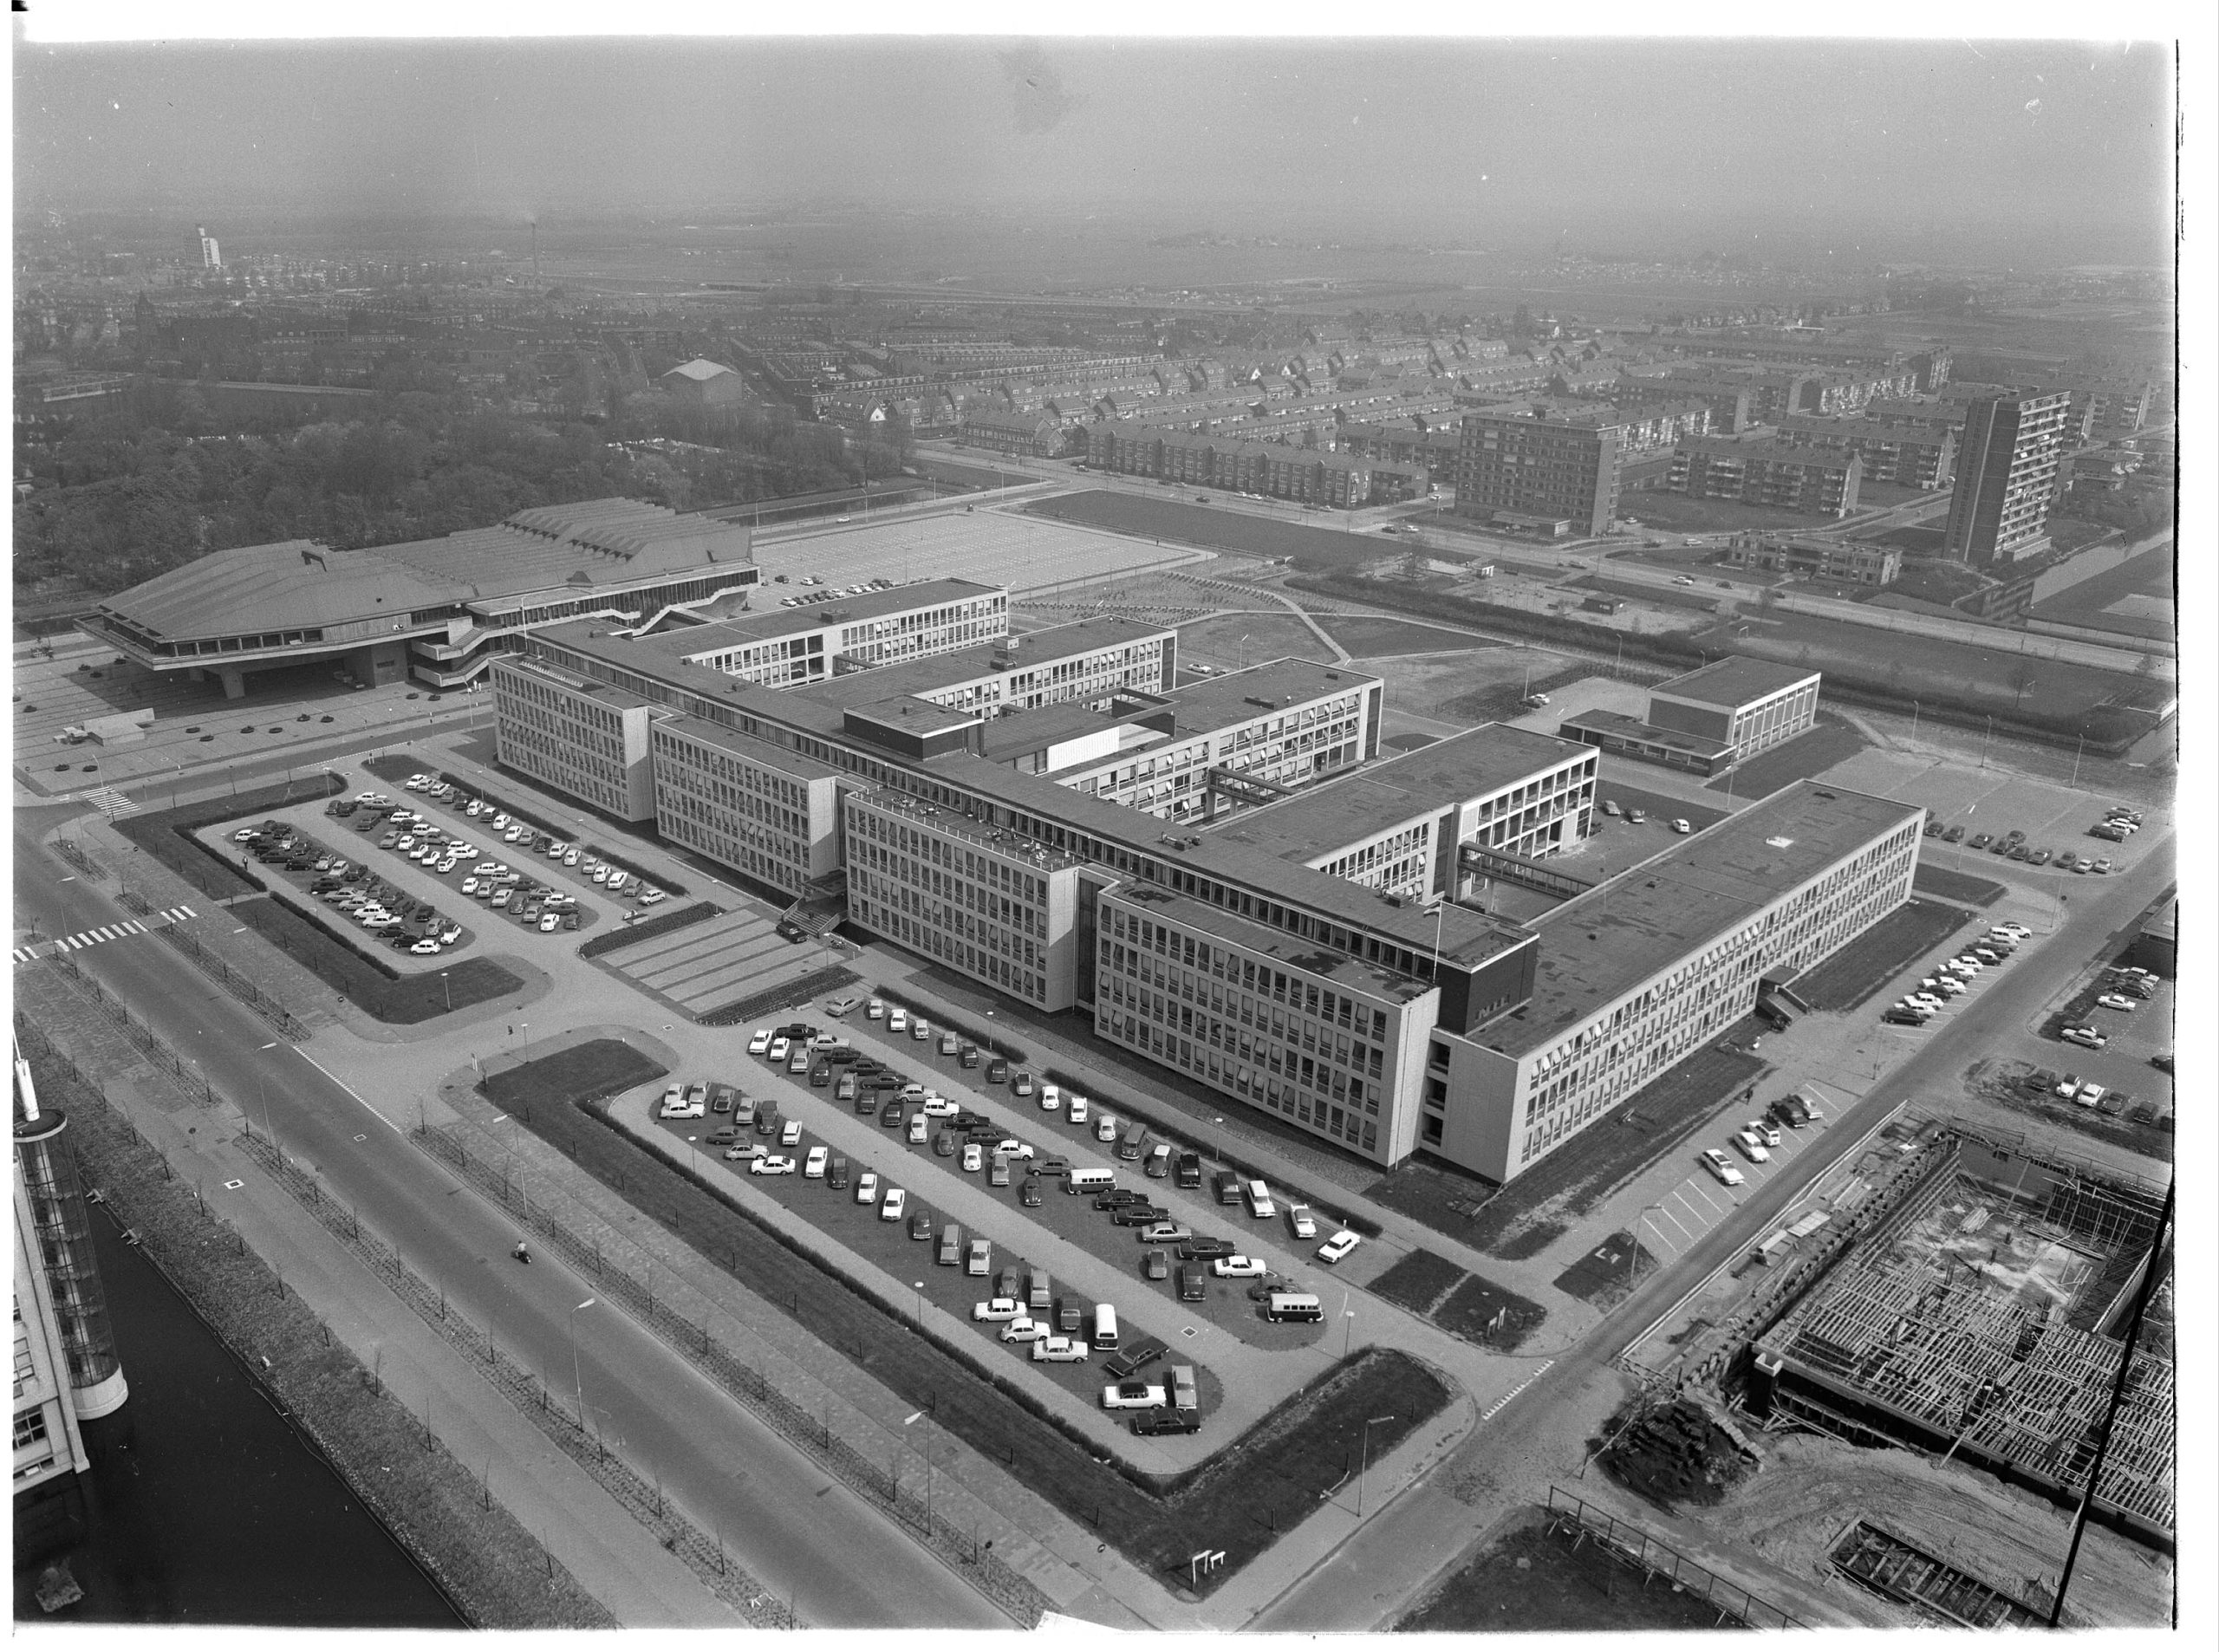 Delft Campus in 1969